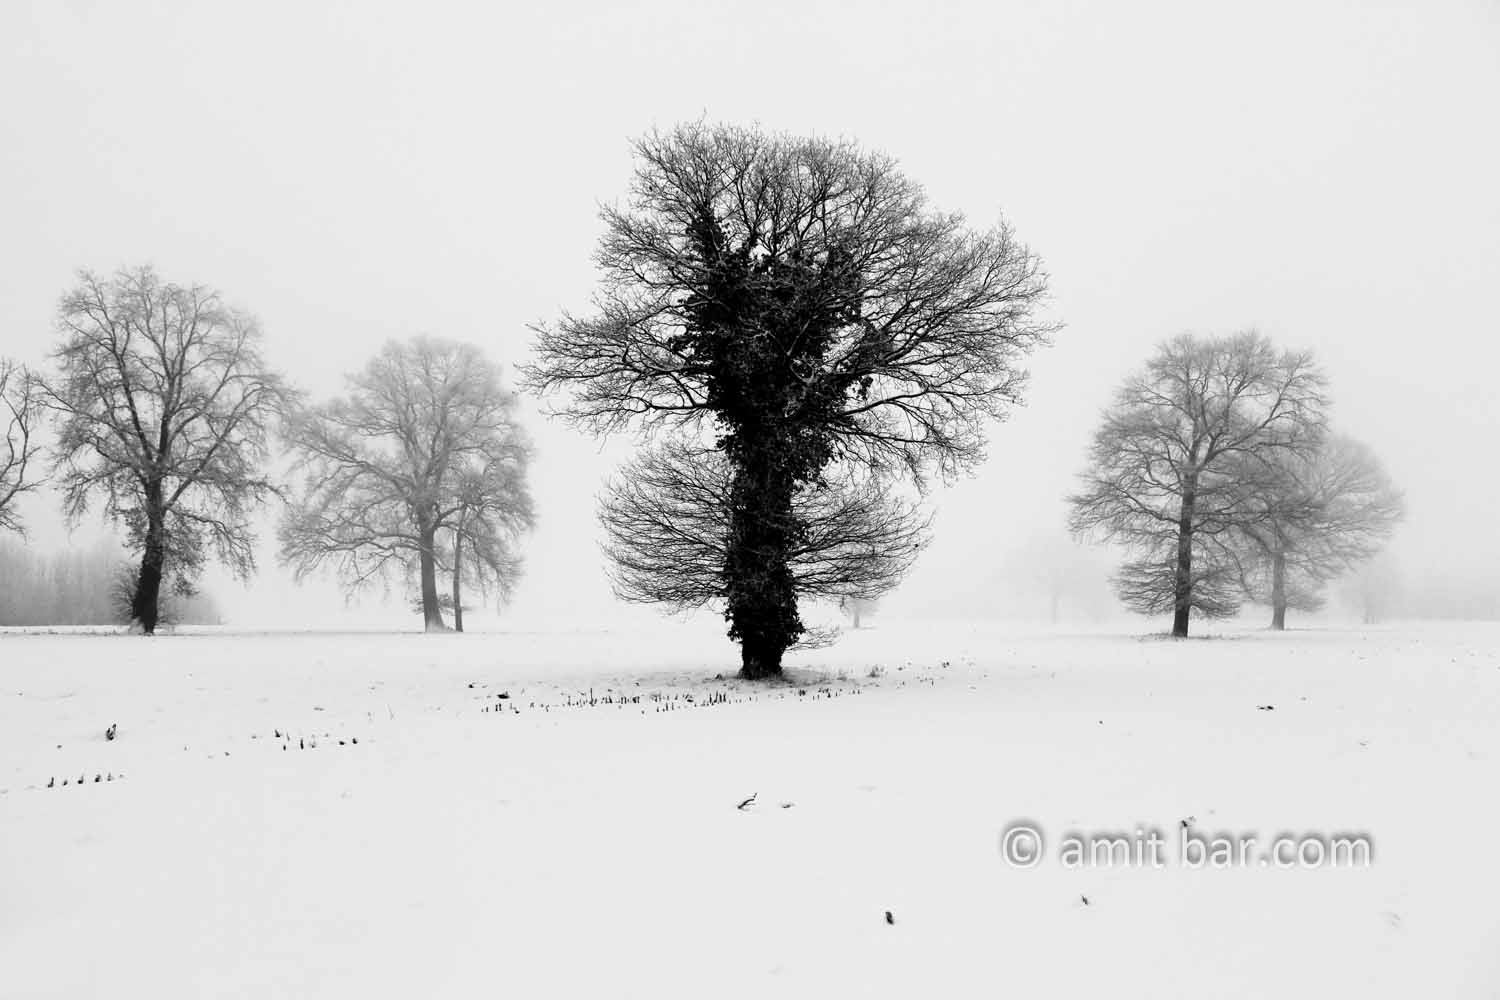 Oaks in snow II: Three oaks in the mist